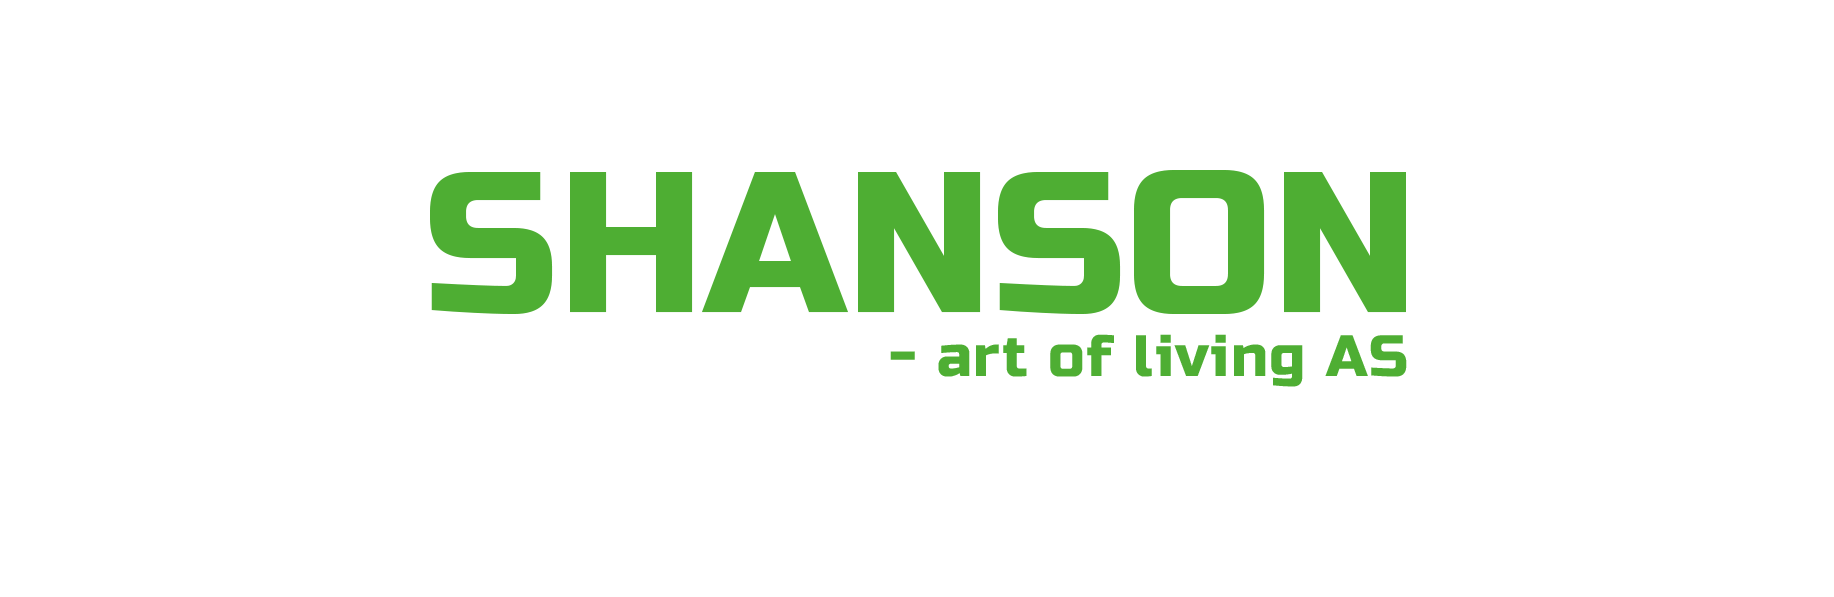 SHANSON - Art of living AS 